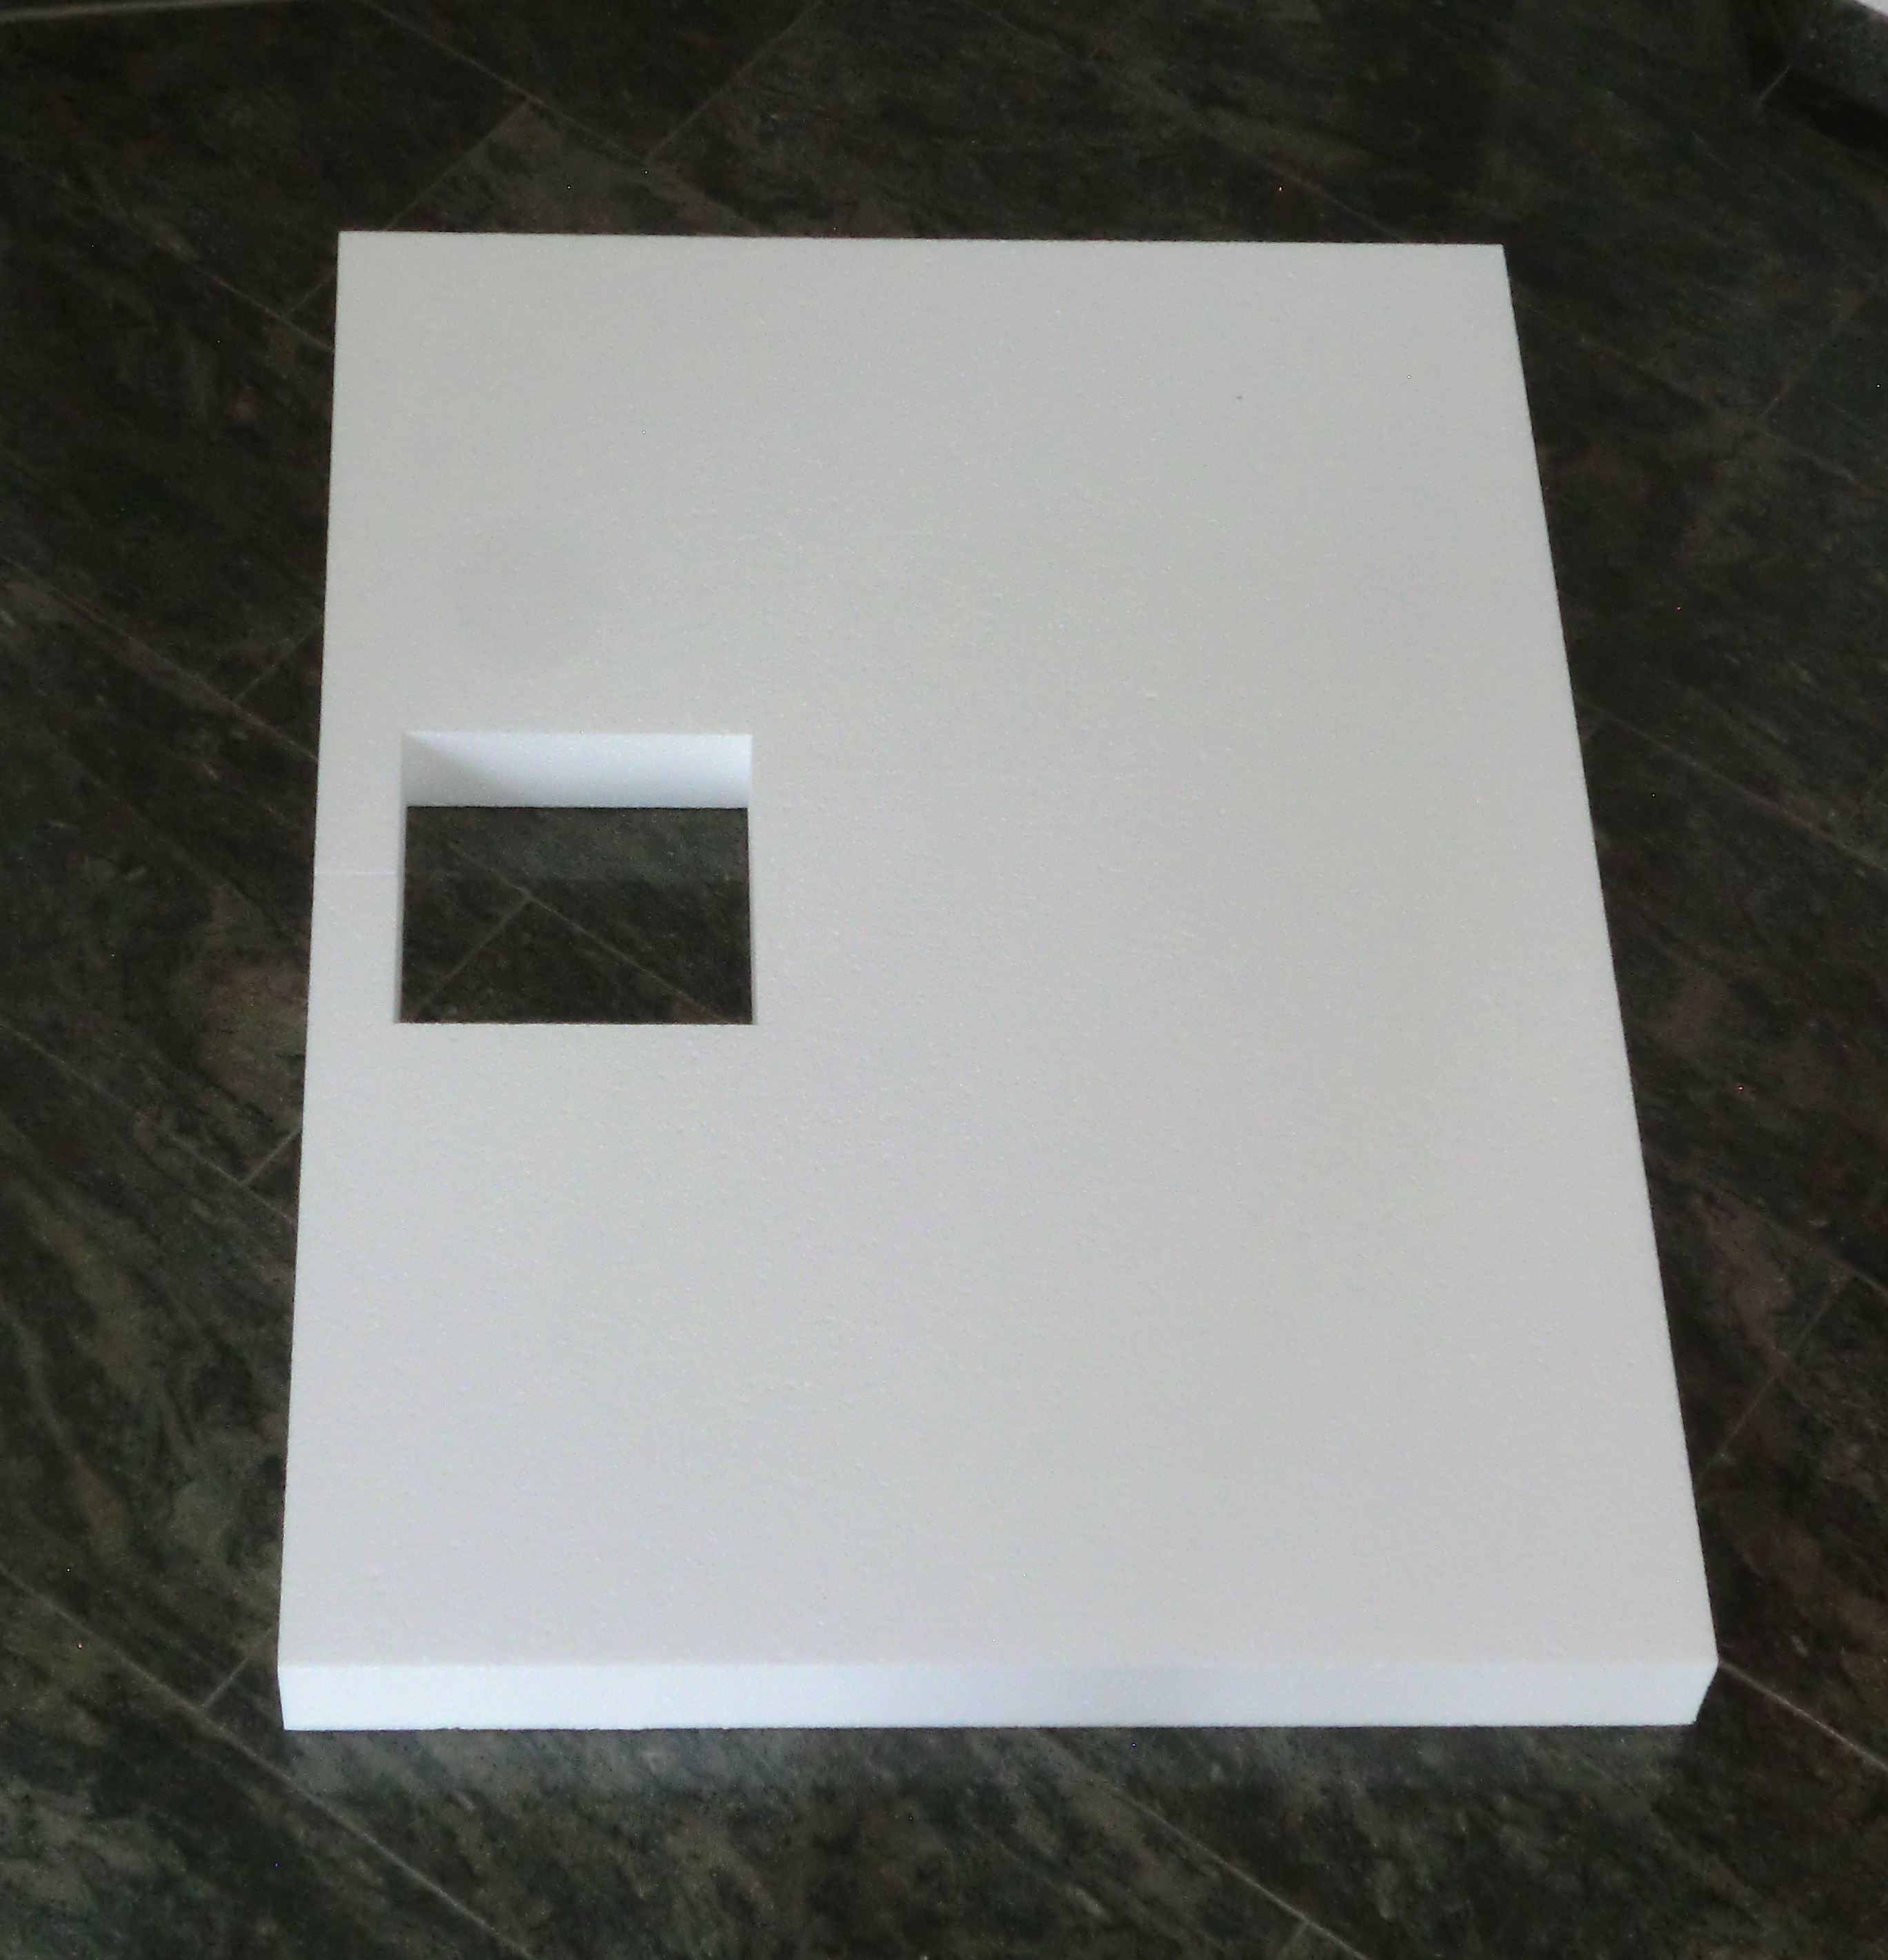 KOMPLETT-PAKET: Duschwanne 140 x 90 cm superflach 3,5 cm weiß mit GERADER STYROPOR-UNTERSEITE Acryl + Styroporträger/Wannenträger + Ablaufgarnitur chrom DN 90